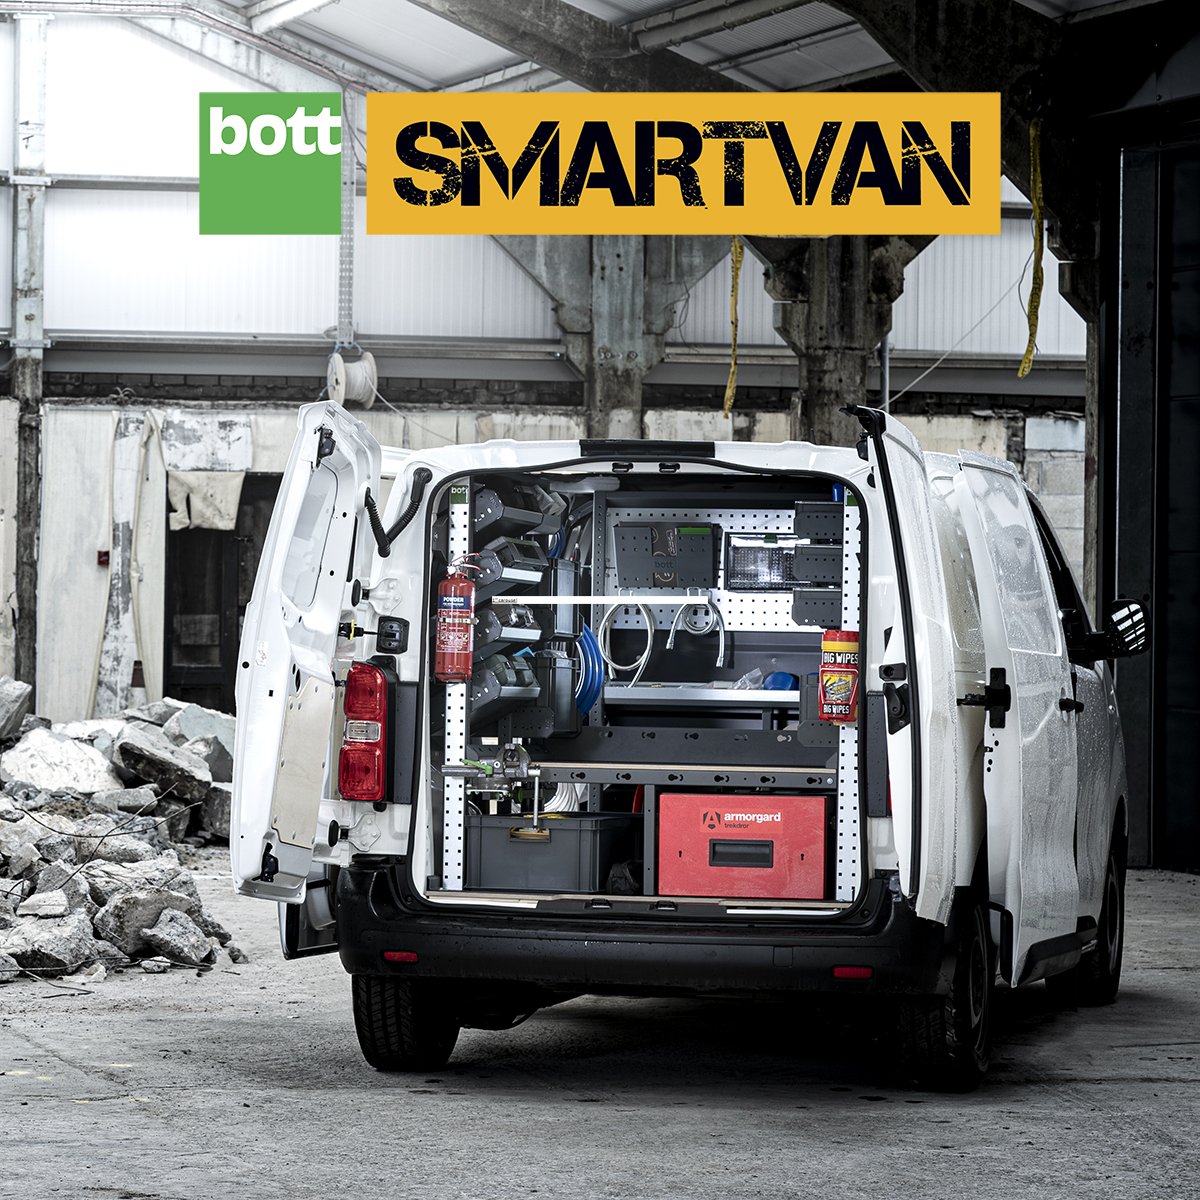 smartvan_homepage.jpg